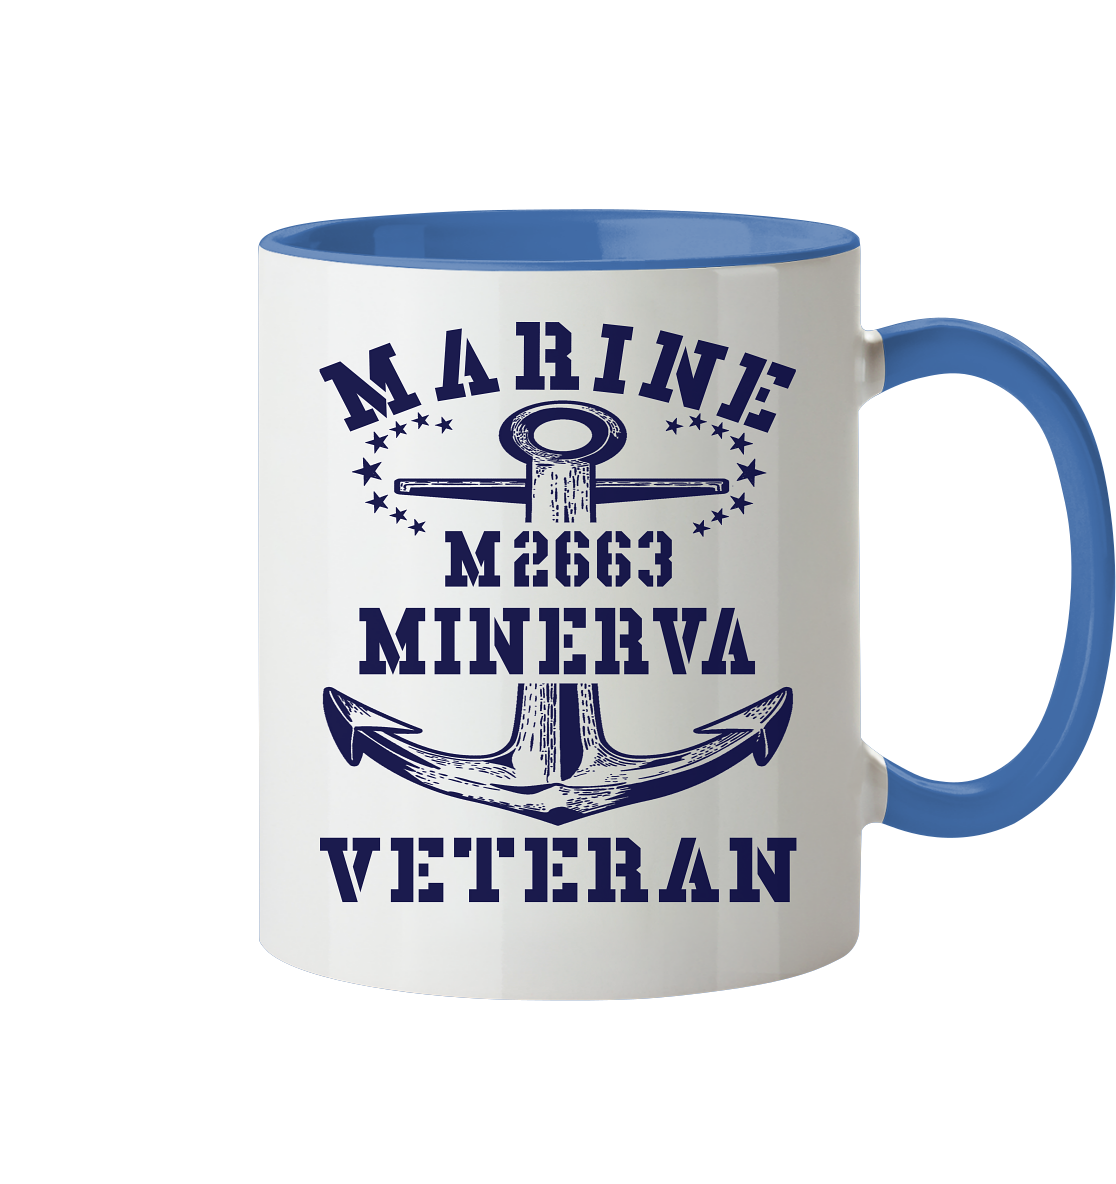 BiMi M2663 MINERVA Marine Veteran - Tasse zweifarbig